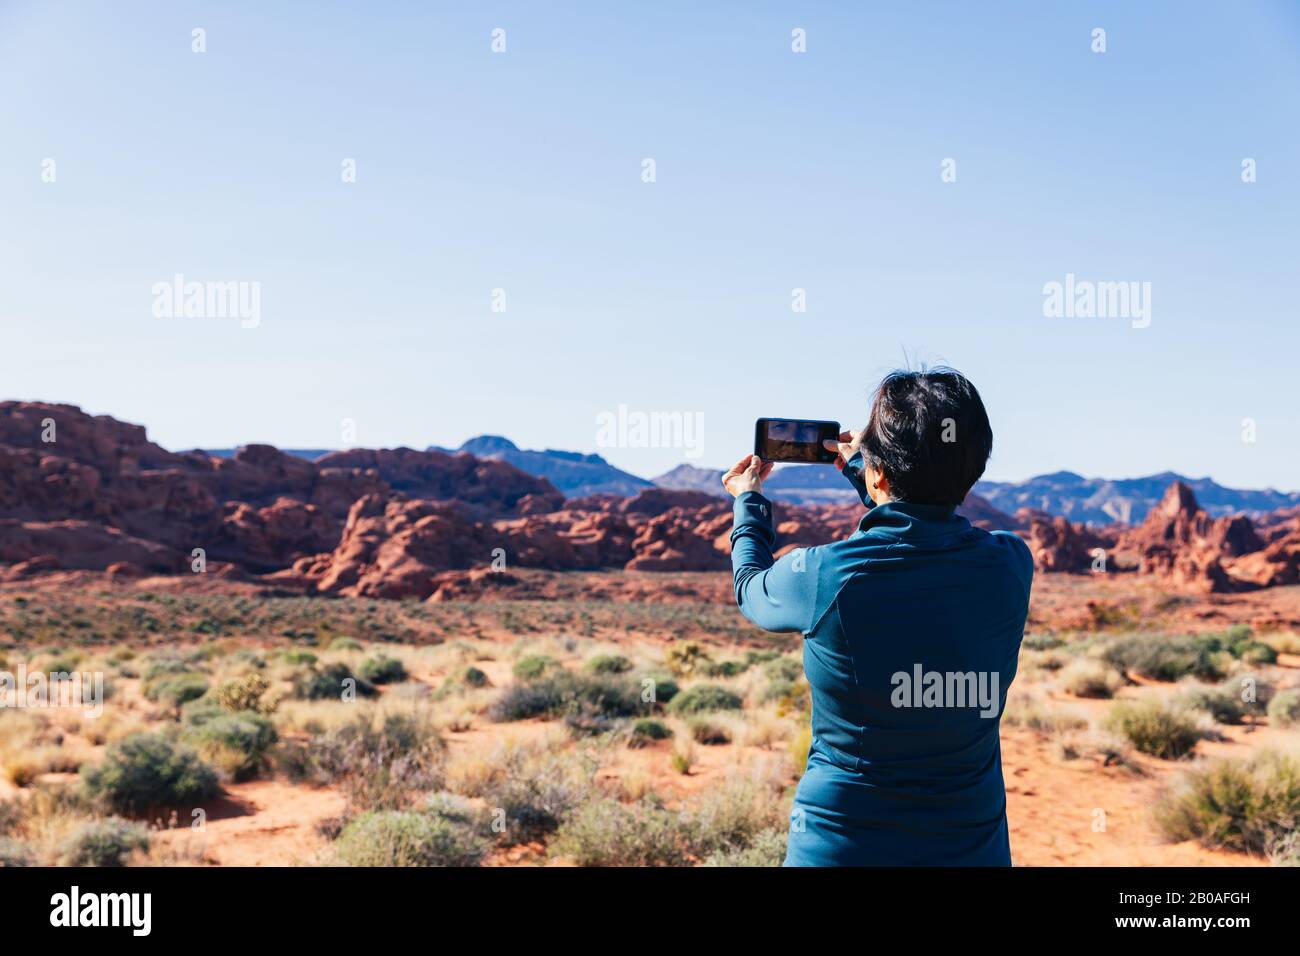 Ältere asiatische Frau, die mit ihrer Kamera ein Foto von einer Wüstenlandschaft fotografiert Stockfoto